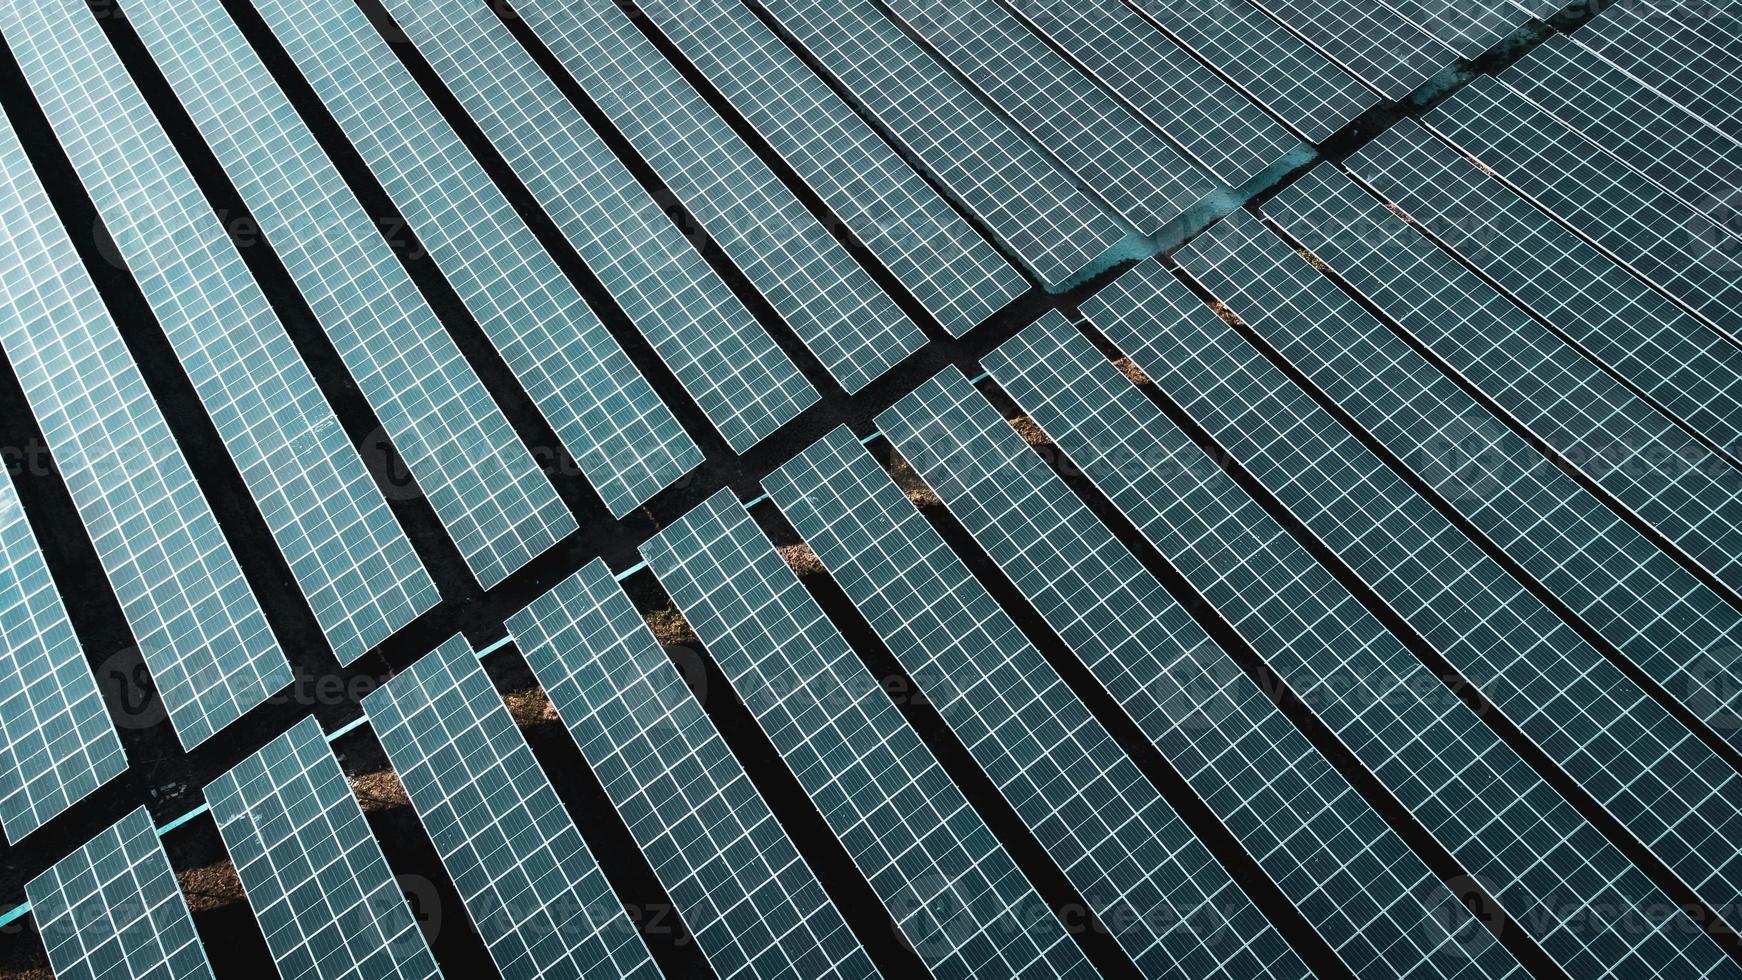 panel de células solares desde la vista aérea. foto paisaje de una granja solar que produce energía limpia.